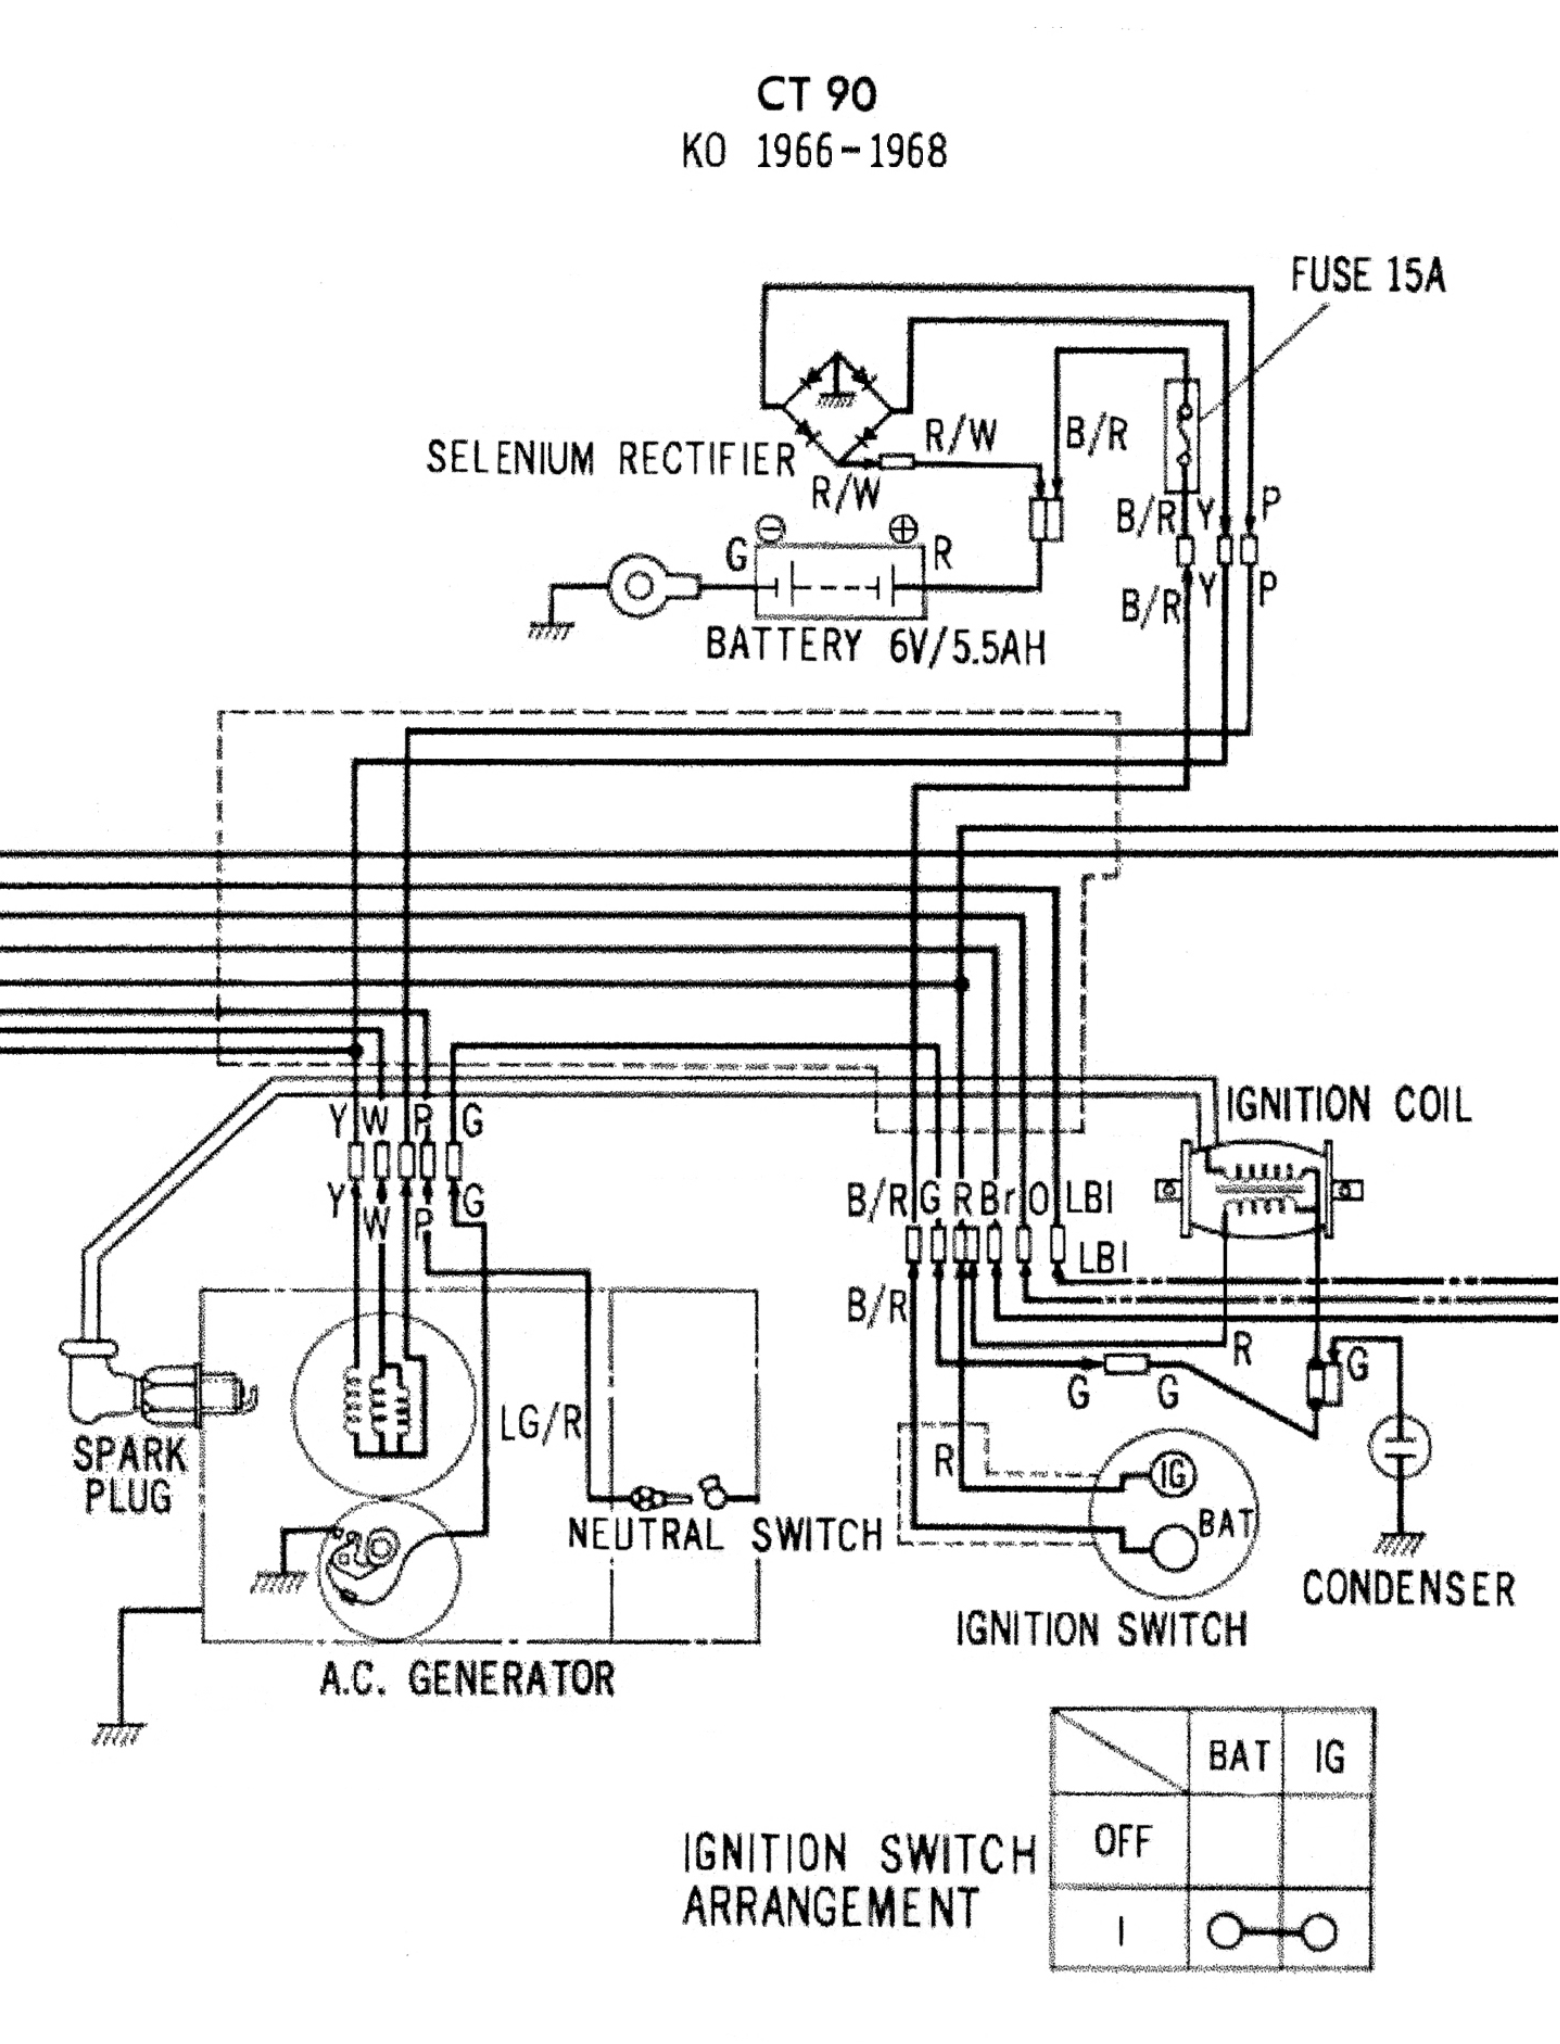 Honda CT90 ignition diagram